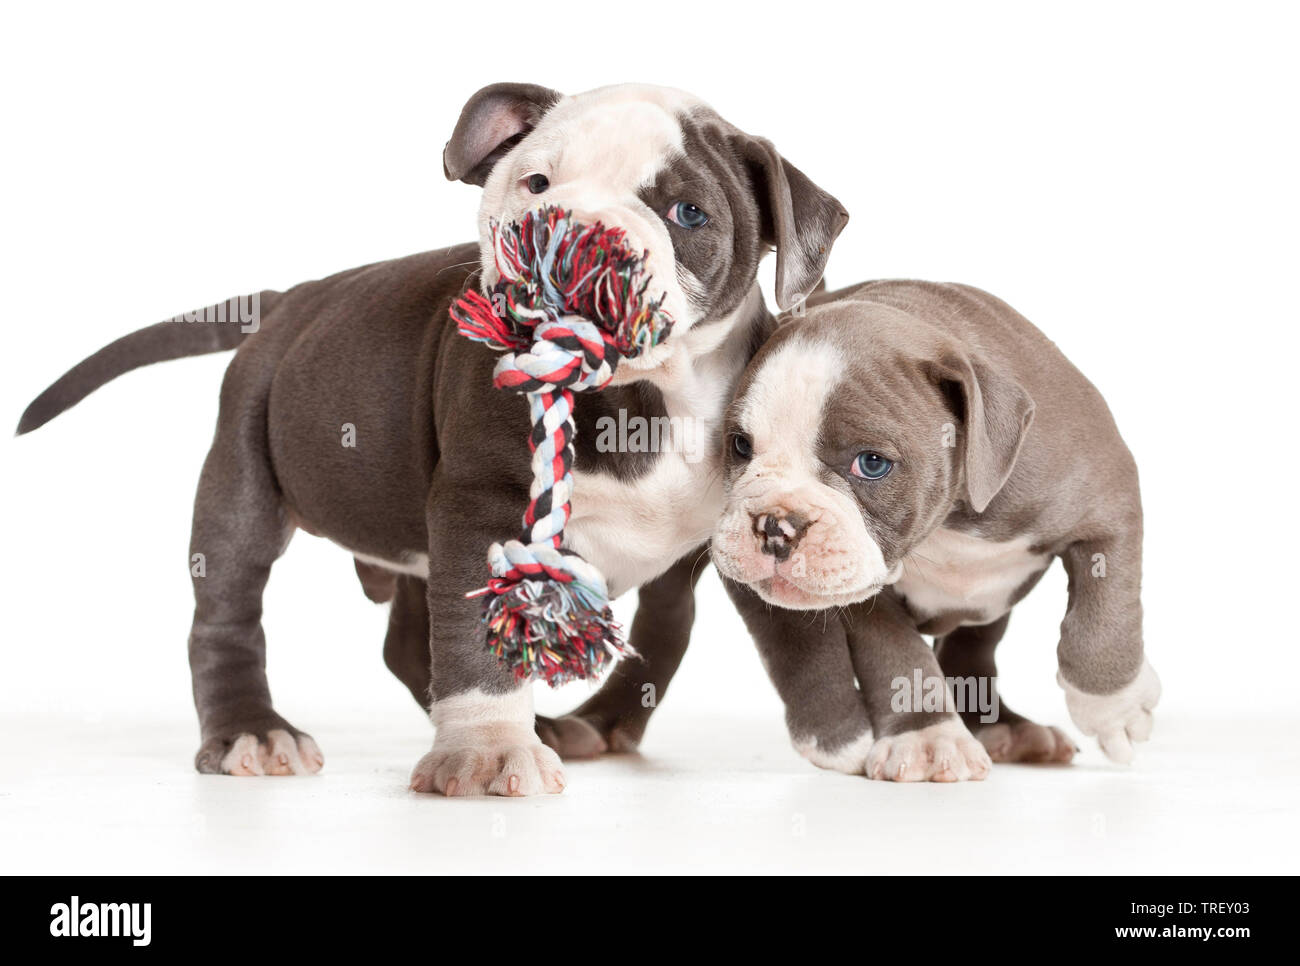 Bulldog anglais. Deux Chiots jouant avec un jouet corde. Studio photo sur un fond blanc. Allemagne Banque D'Images